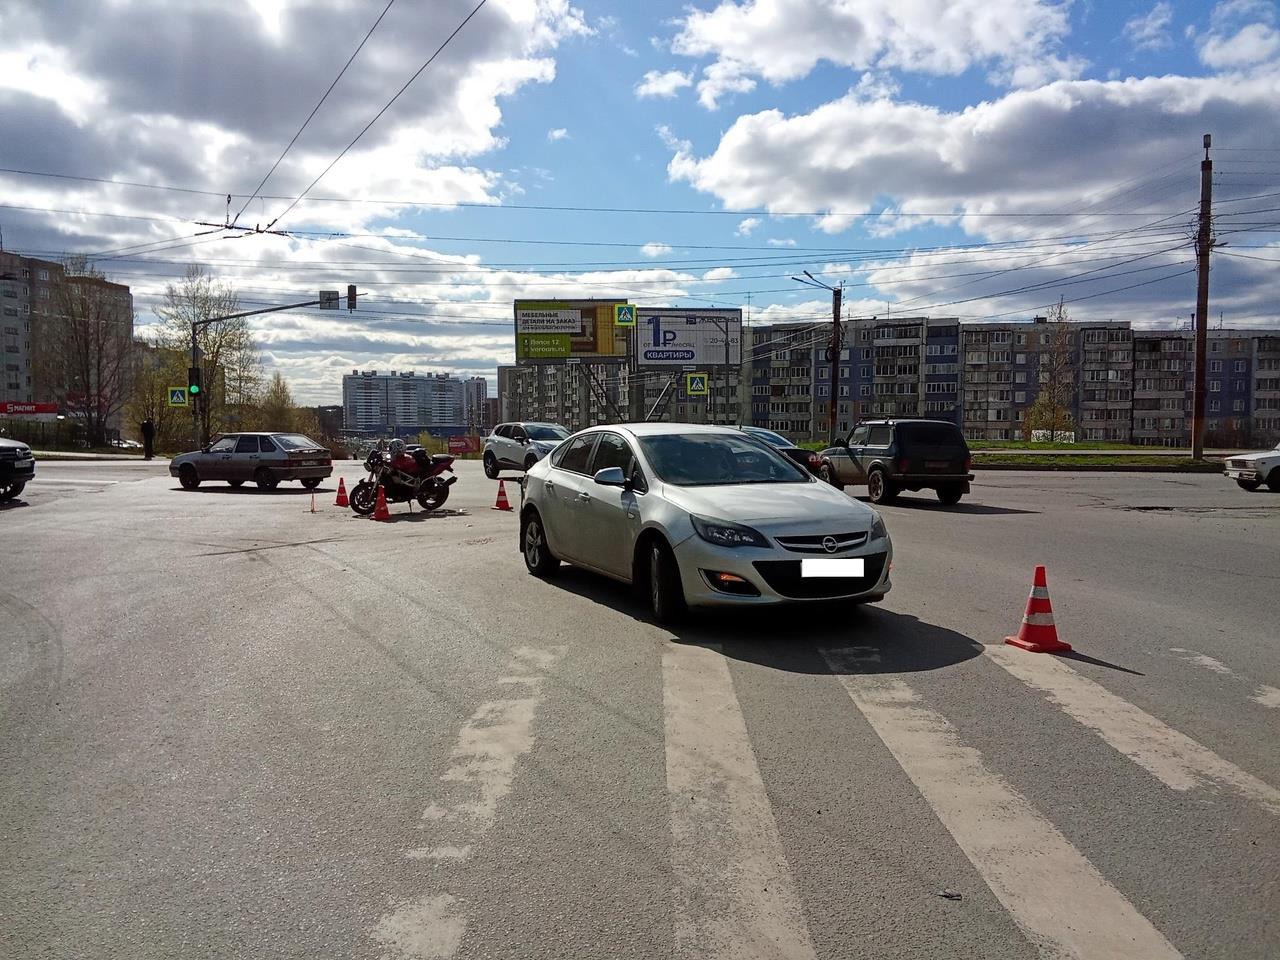 В Кирове в ДТП пострадал 19-летний мотоциклист